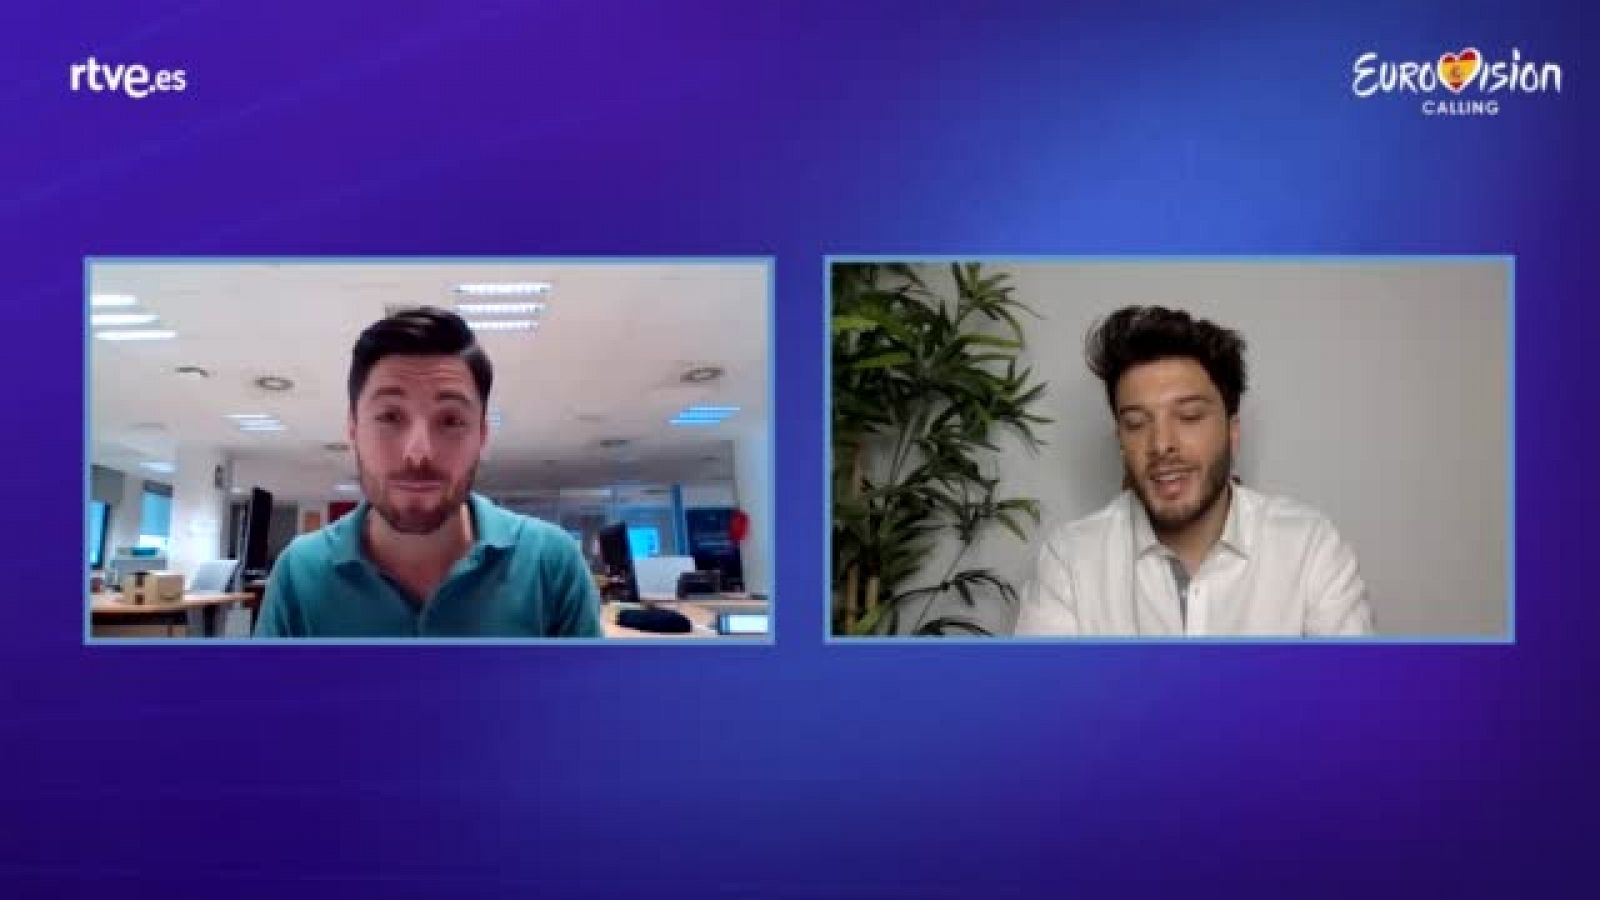 Eurovisión 2020 - Eurovision calling: Entrevista a Blas Cantó